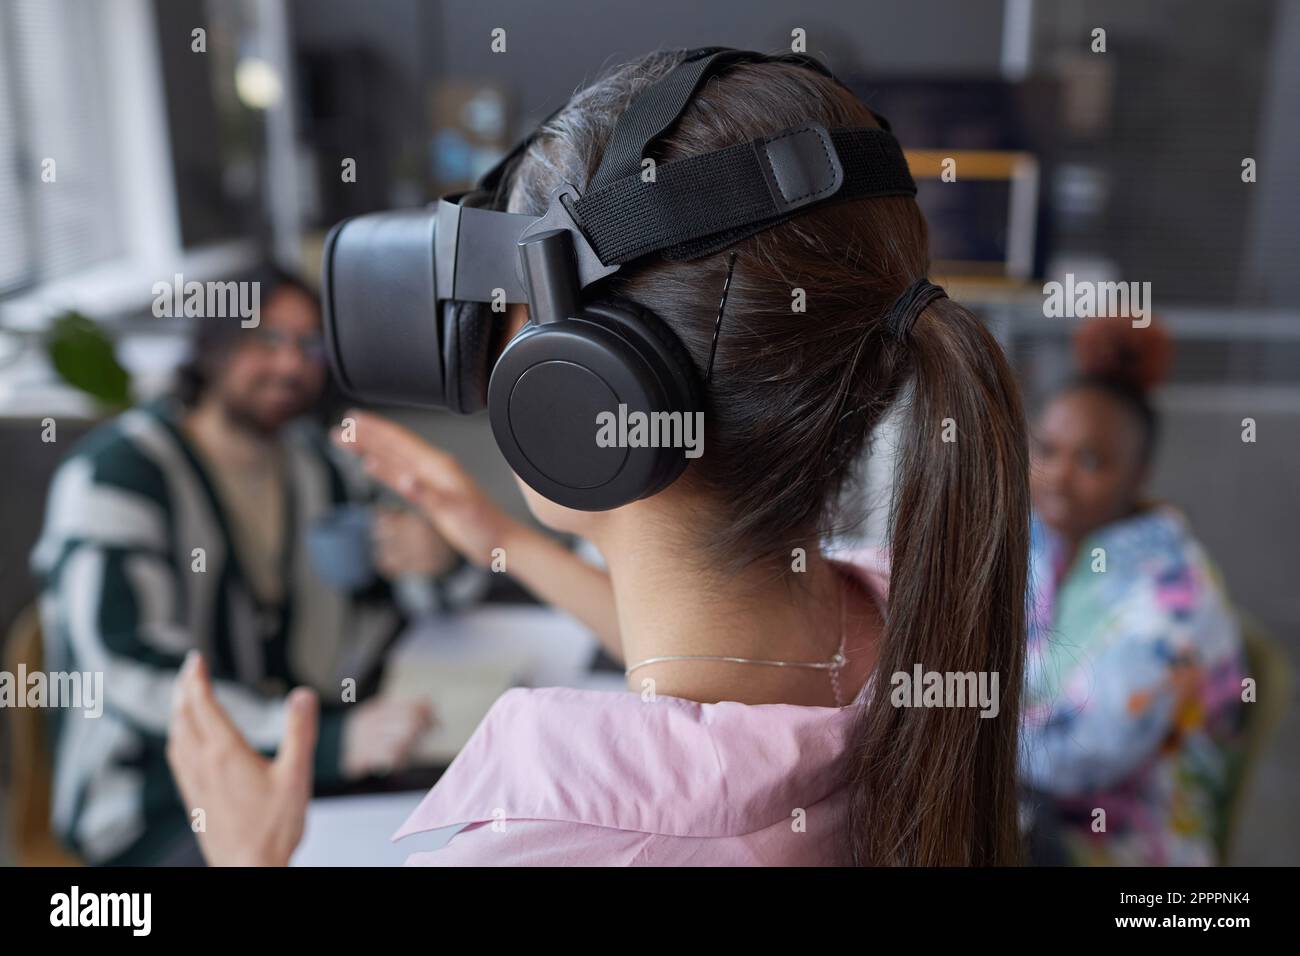 Rückansicht einer jungen Frau, die zusammen mit ihren Kollegen während der Teamarbeit bei einem Meeting eine VR-Brille testet Stockfoto